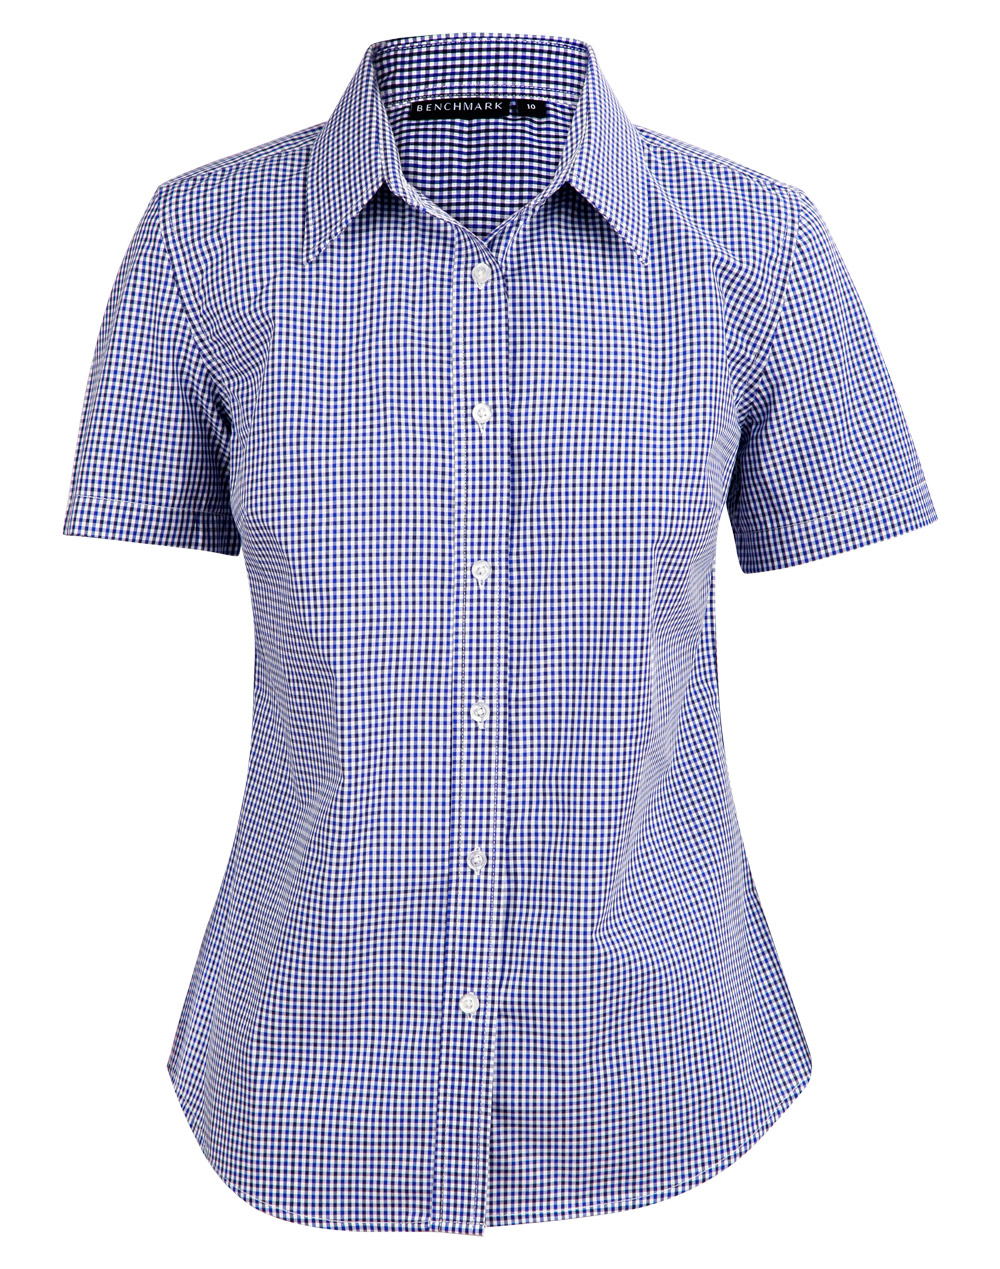 M8320S/M8320L/M8320Q Ladies’ Multi_Tone Check Short Sleeve Shirt